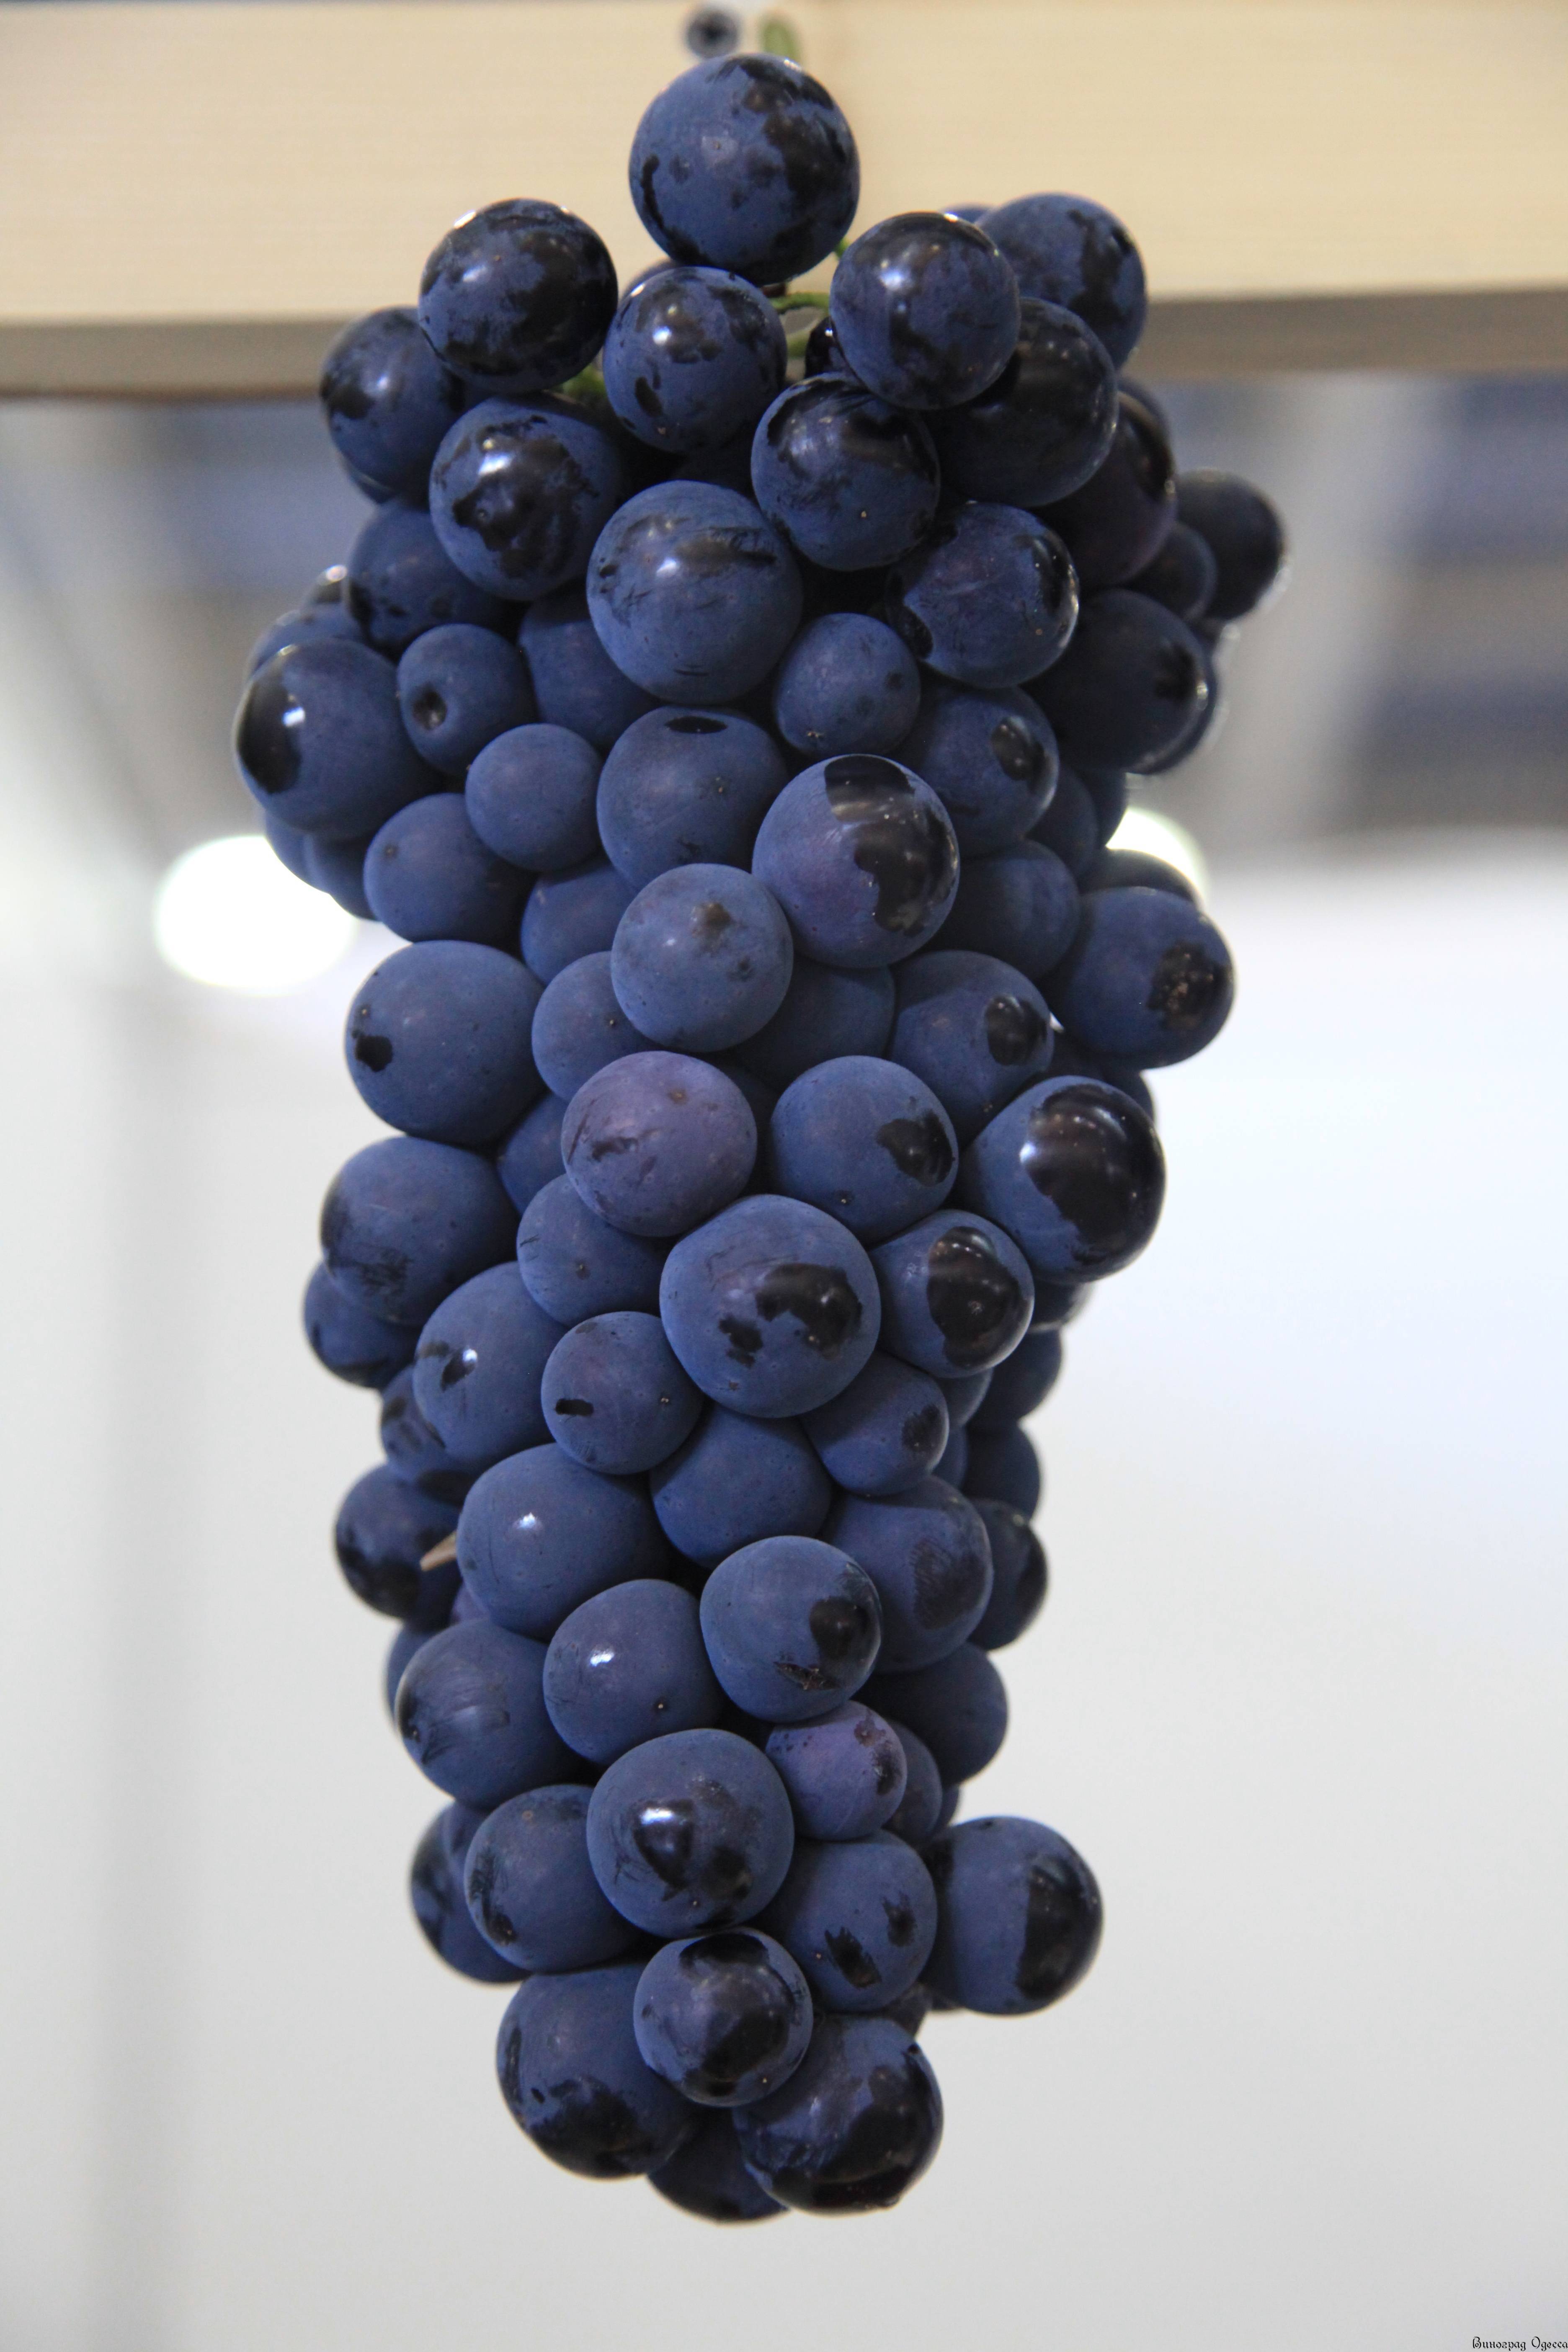 Страшенский — чёрный матовый сорт винограда с нежной мякотью